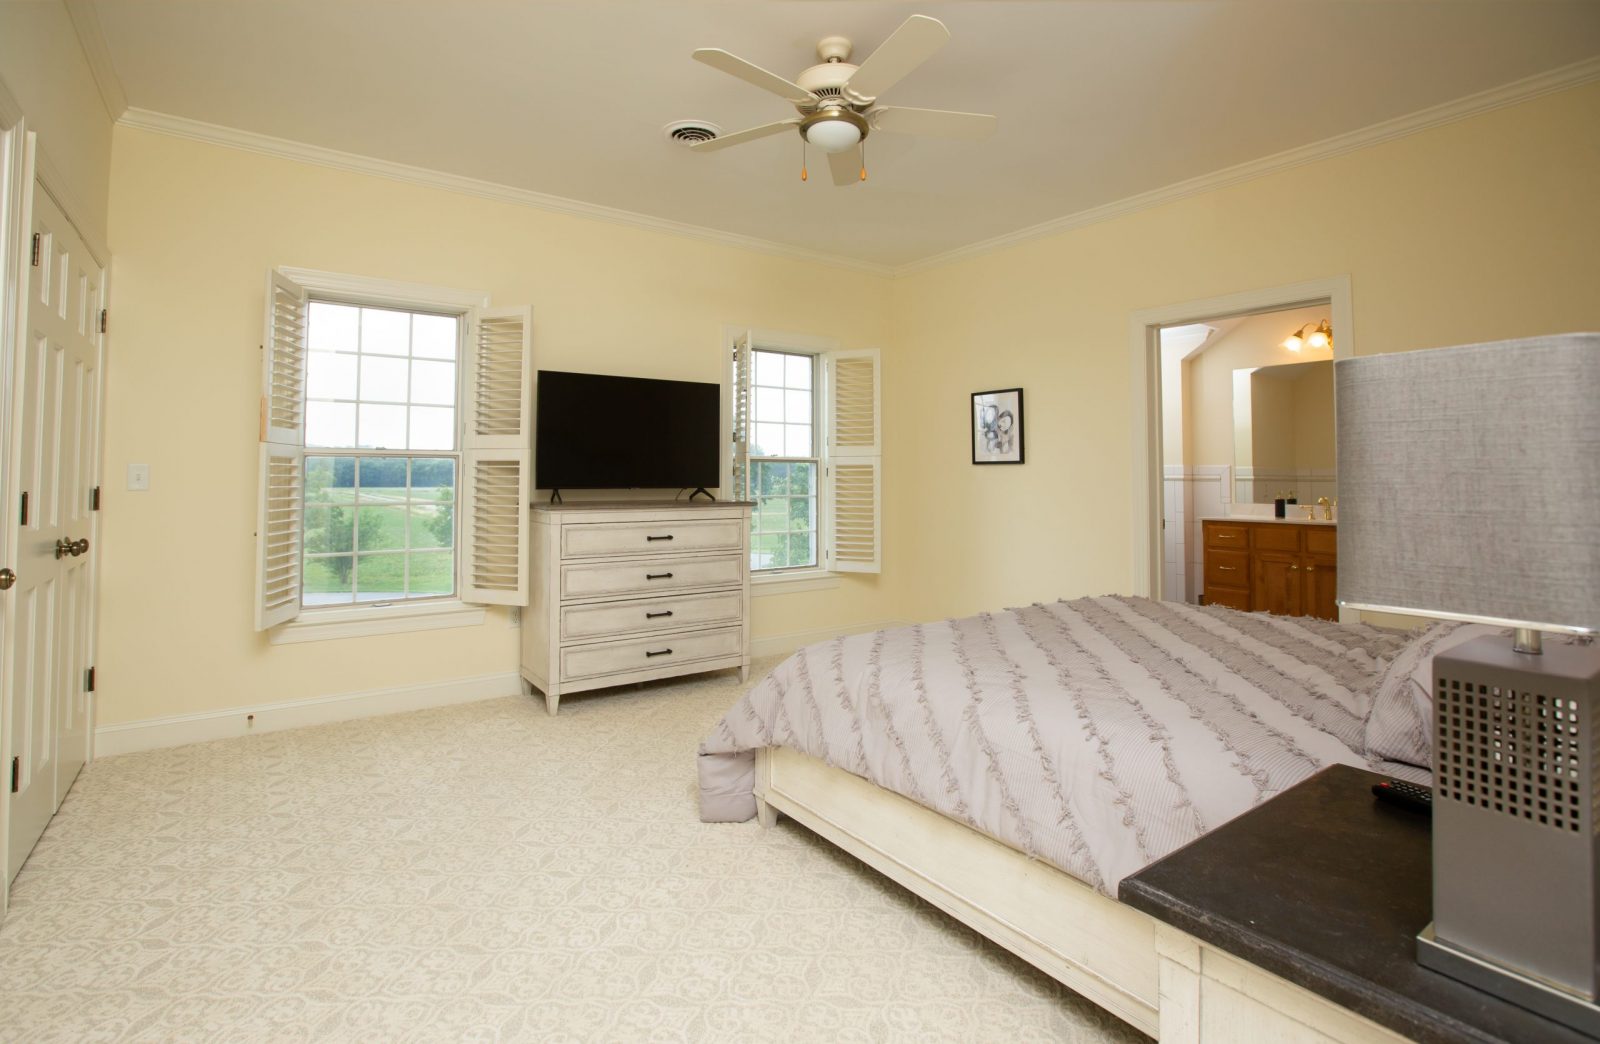 Light grey linens, bedroom view